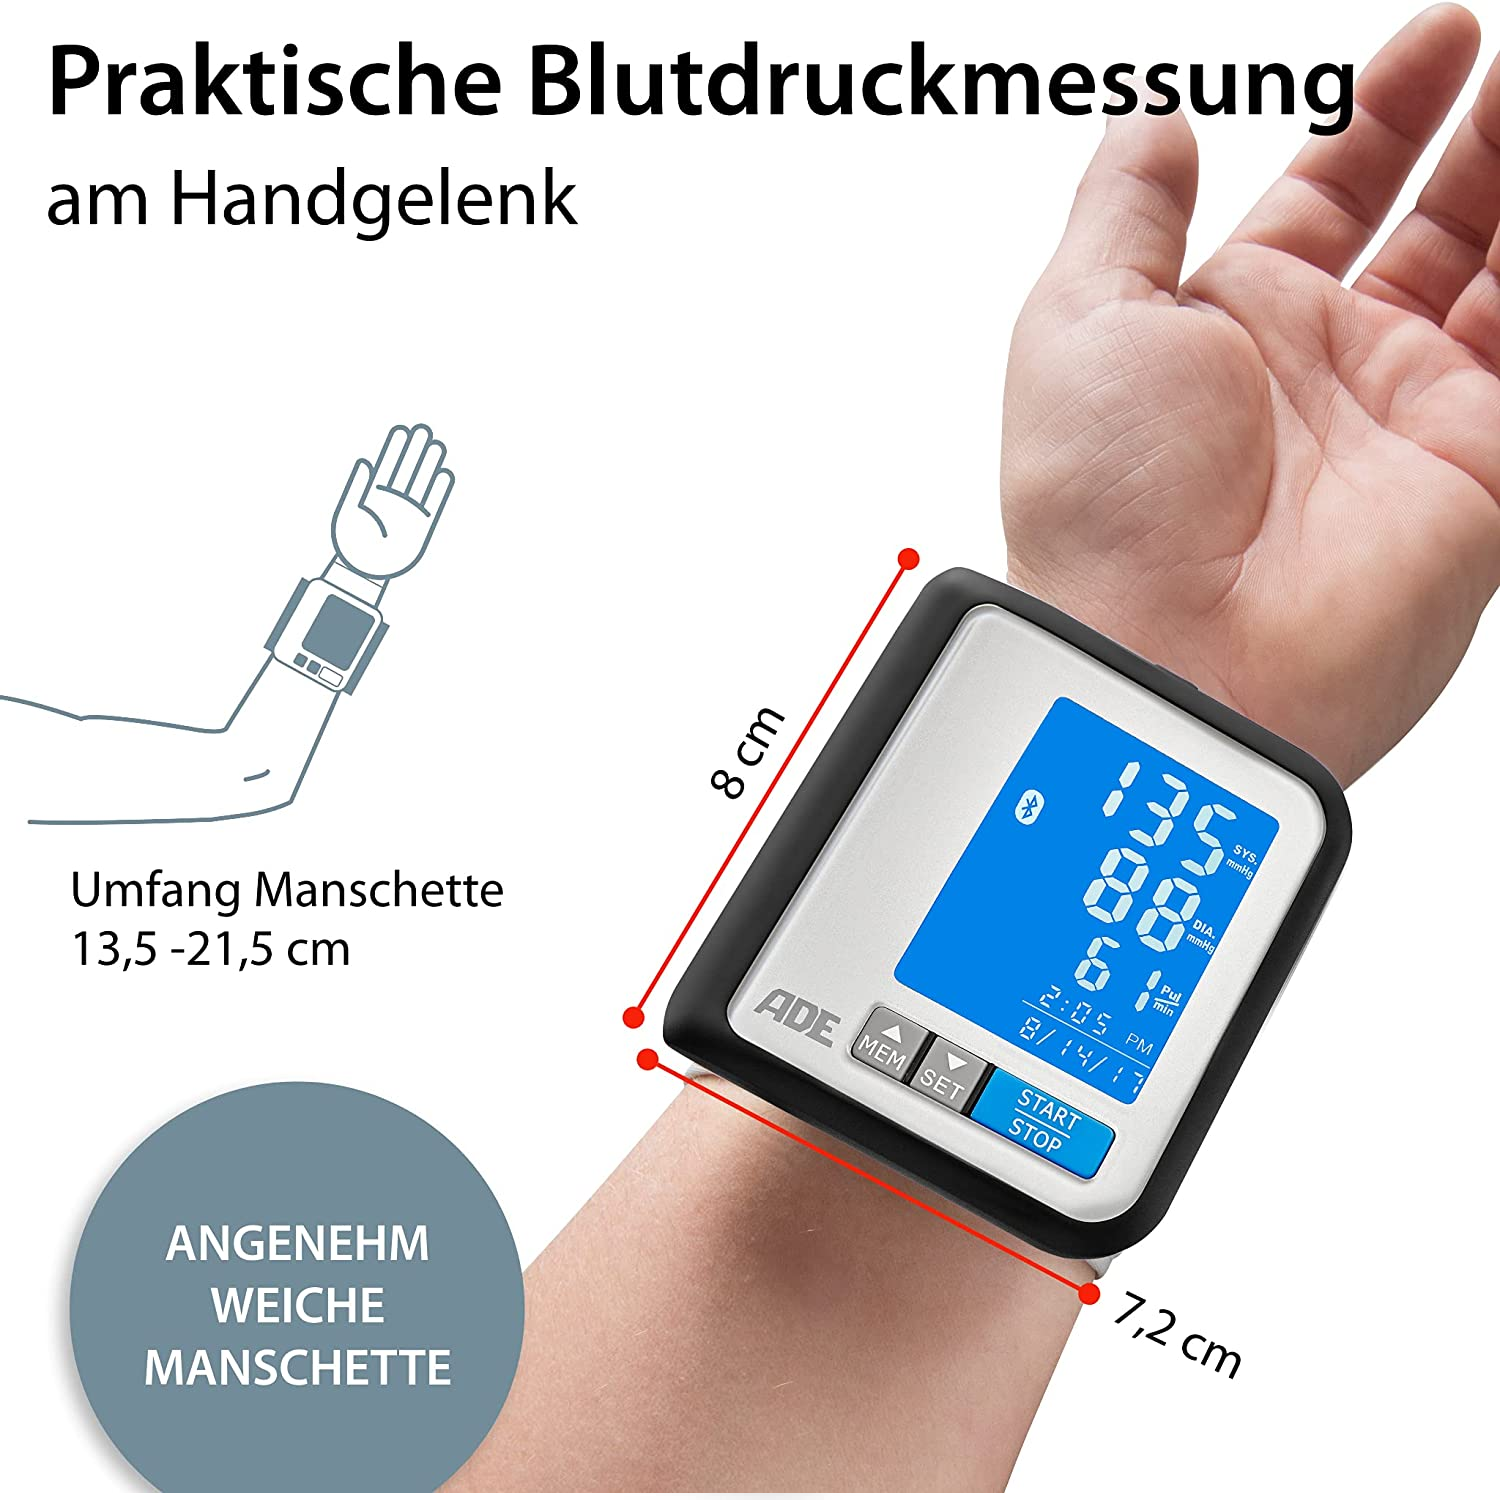 Blutdruckmessgerät Handgelenk BPM1600 FITvigo besonders flach, beleuchtetes Display mit exzellenter Ablesbarkeit, große Anzeige geeignet für Senioren (Blutdruck/ Puls messen, Arrhythmie-Warnung)